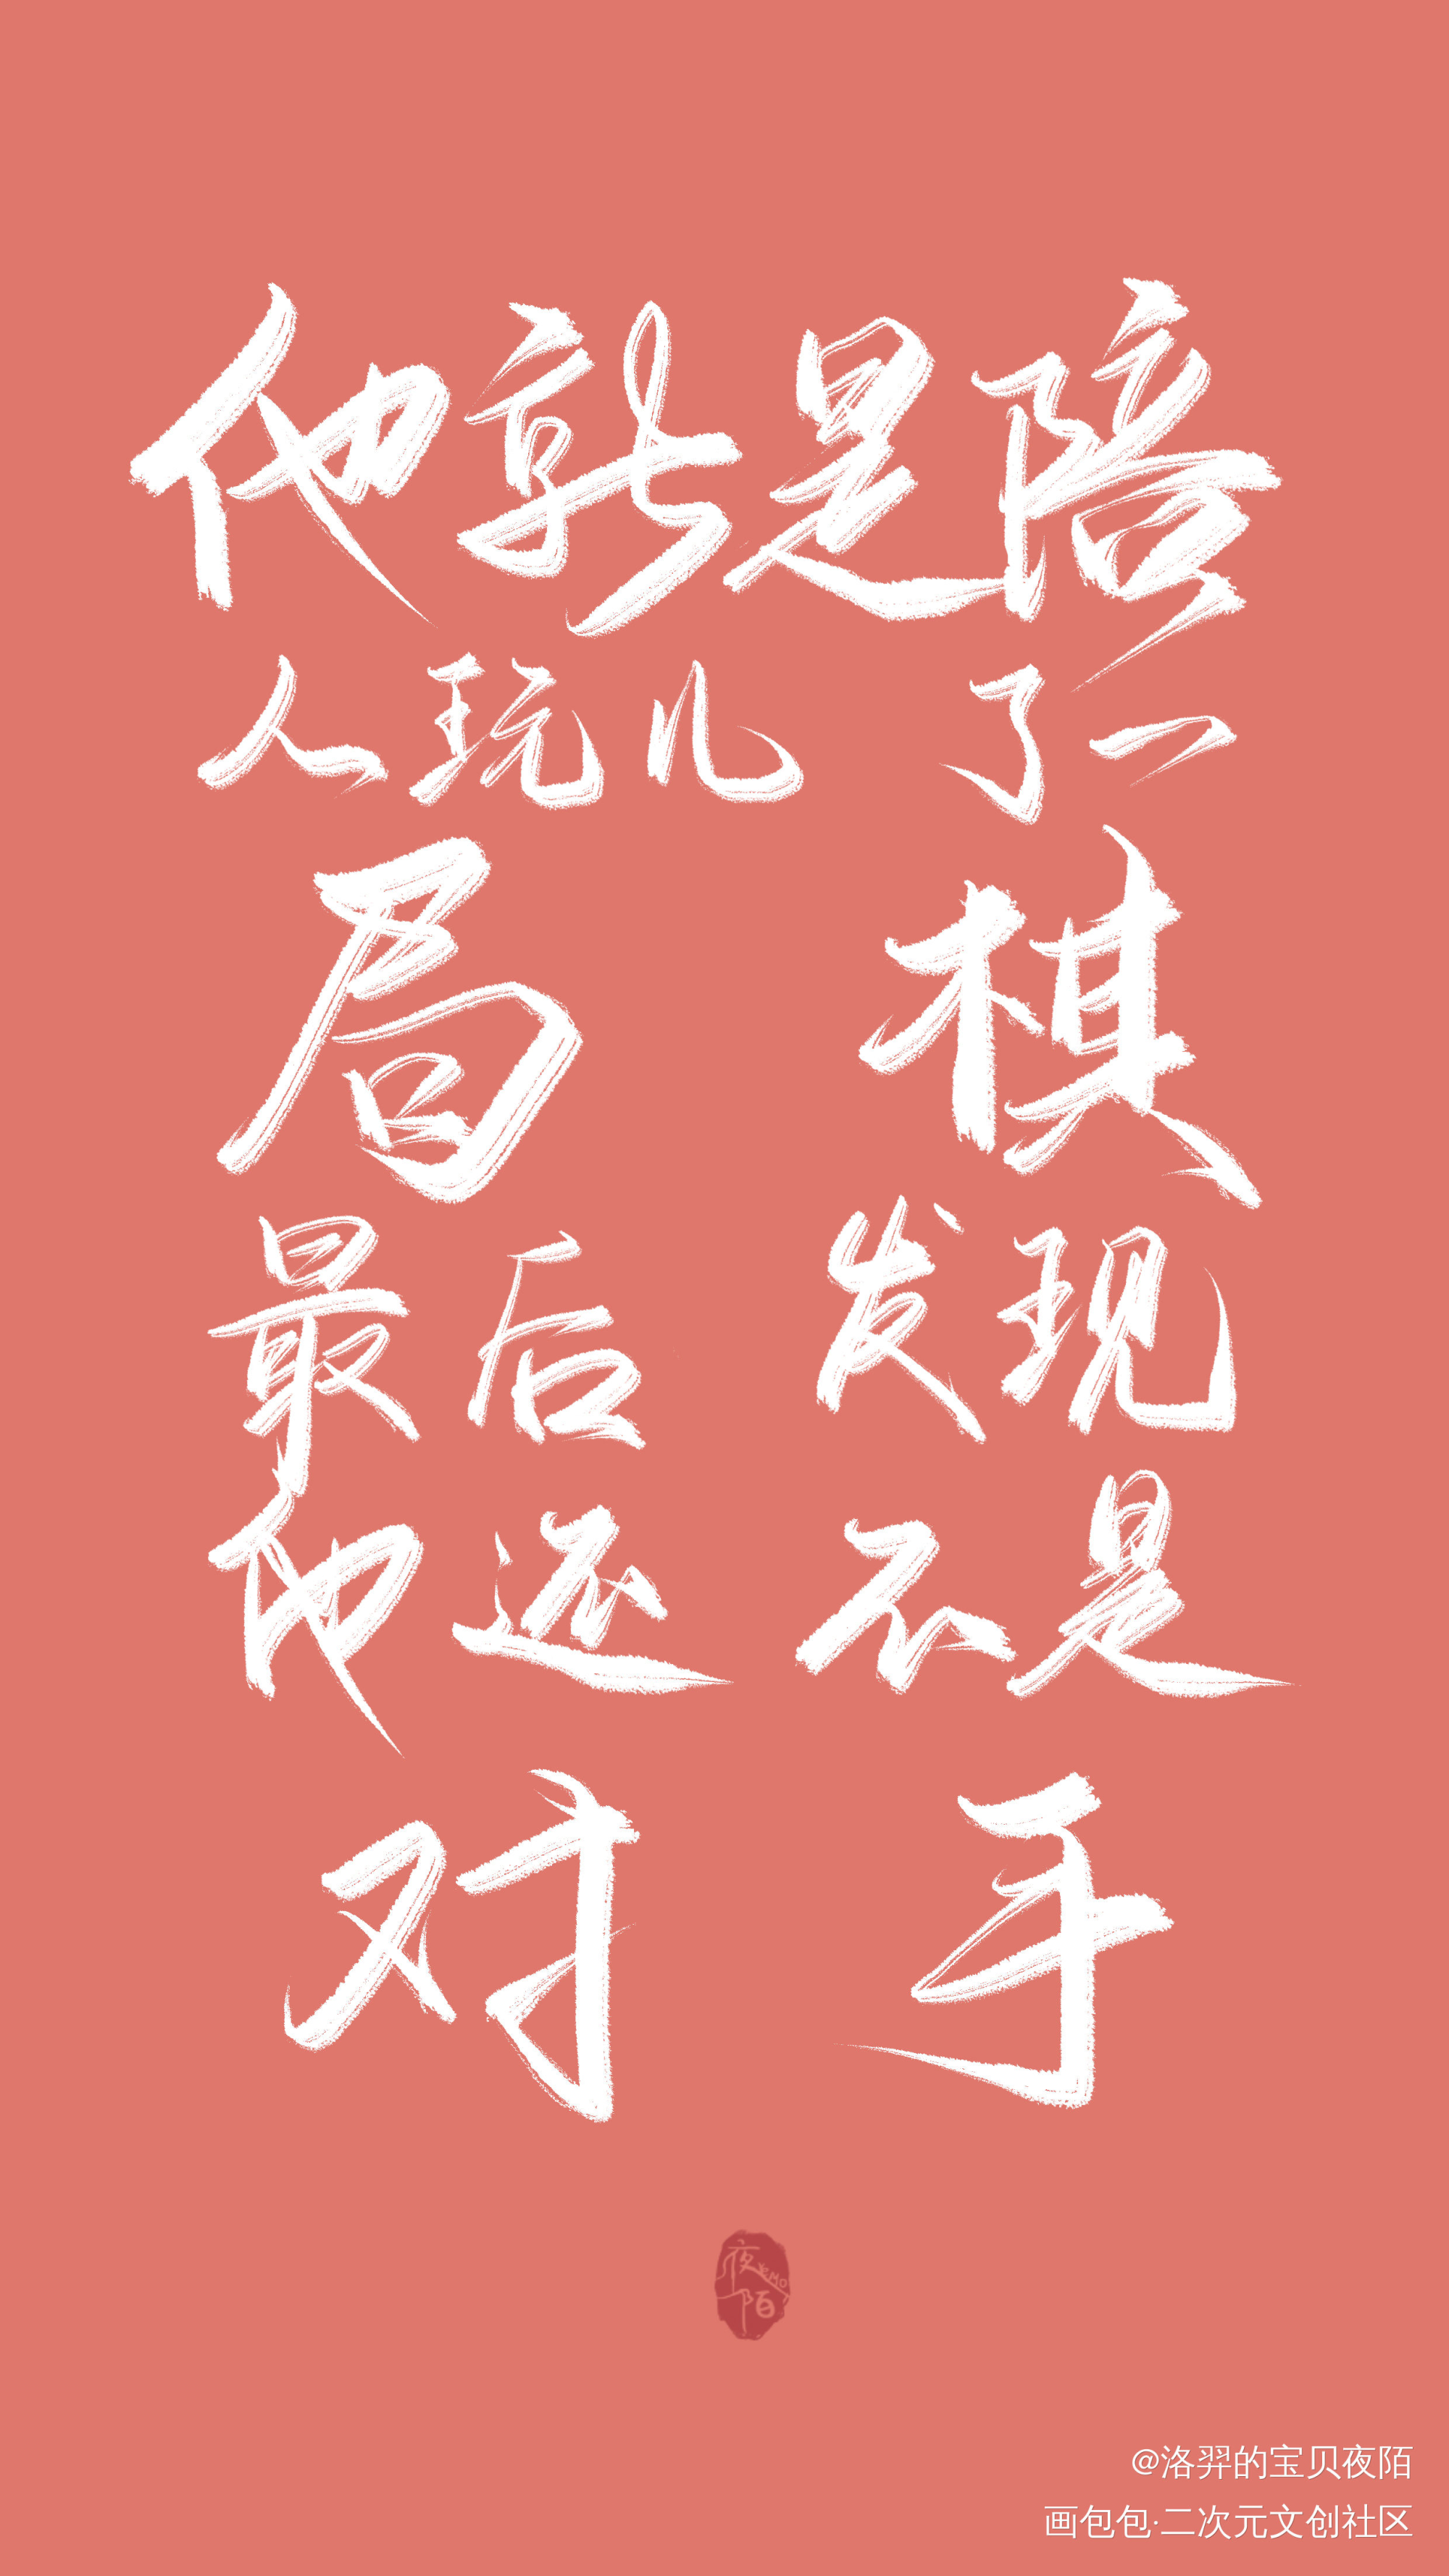 【板写】｜小辉哥_附加遗产188男团我要上首推字体设计见字如晤板写绘画作品